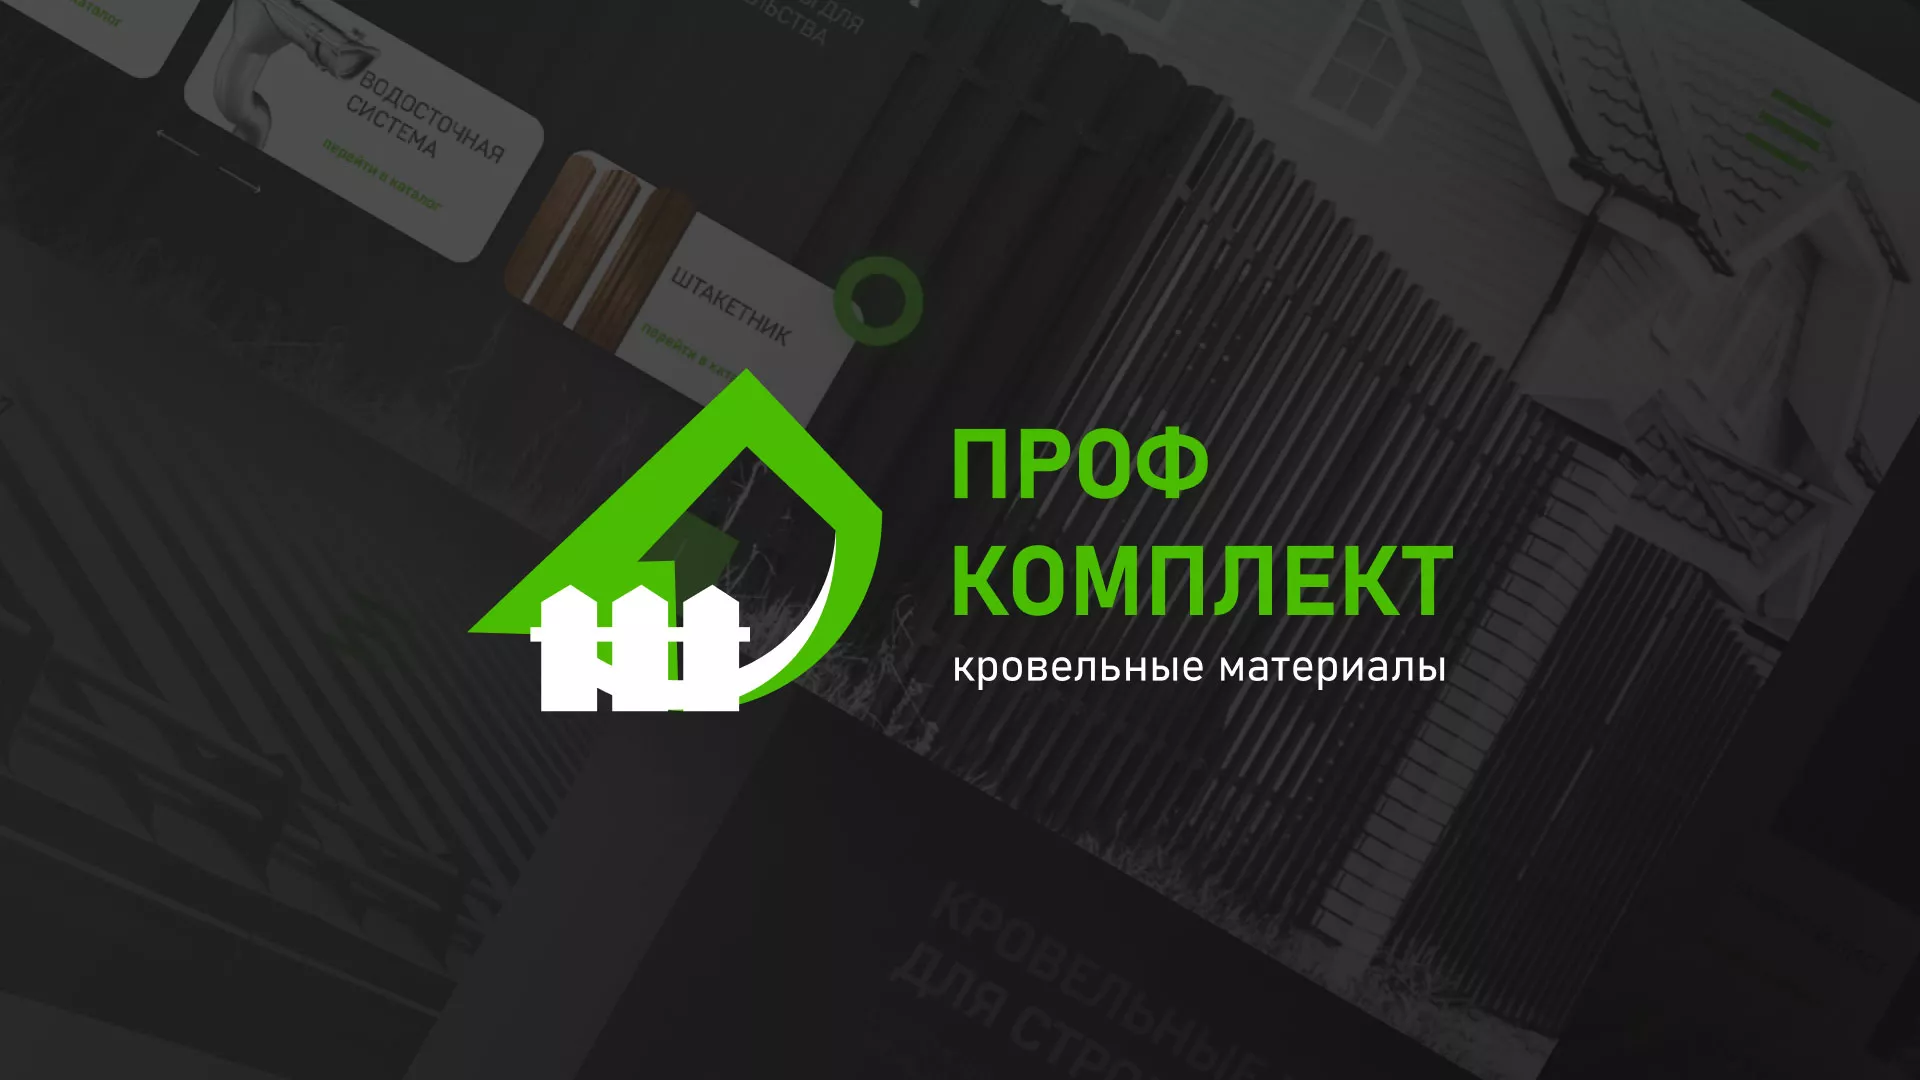 Создание сайта компании «Проф Комплект» в Урюпинске